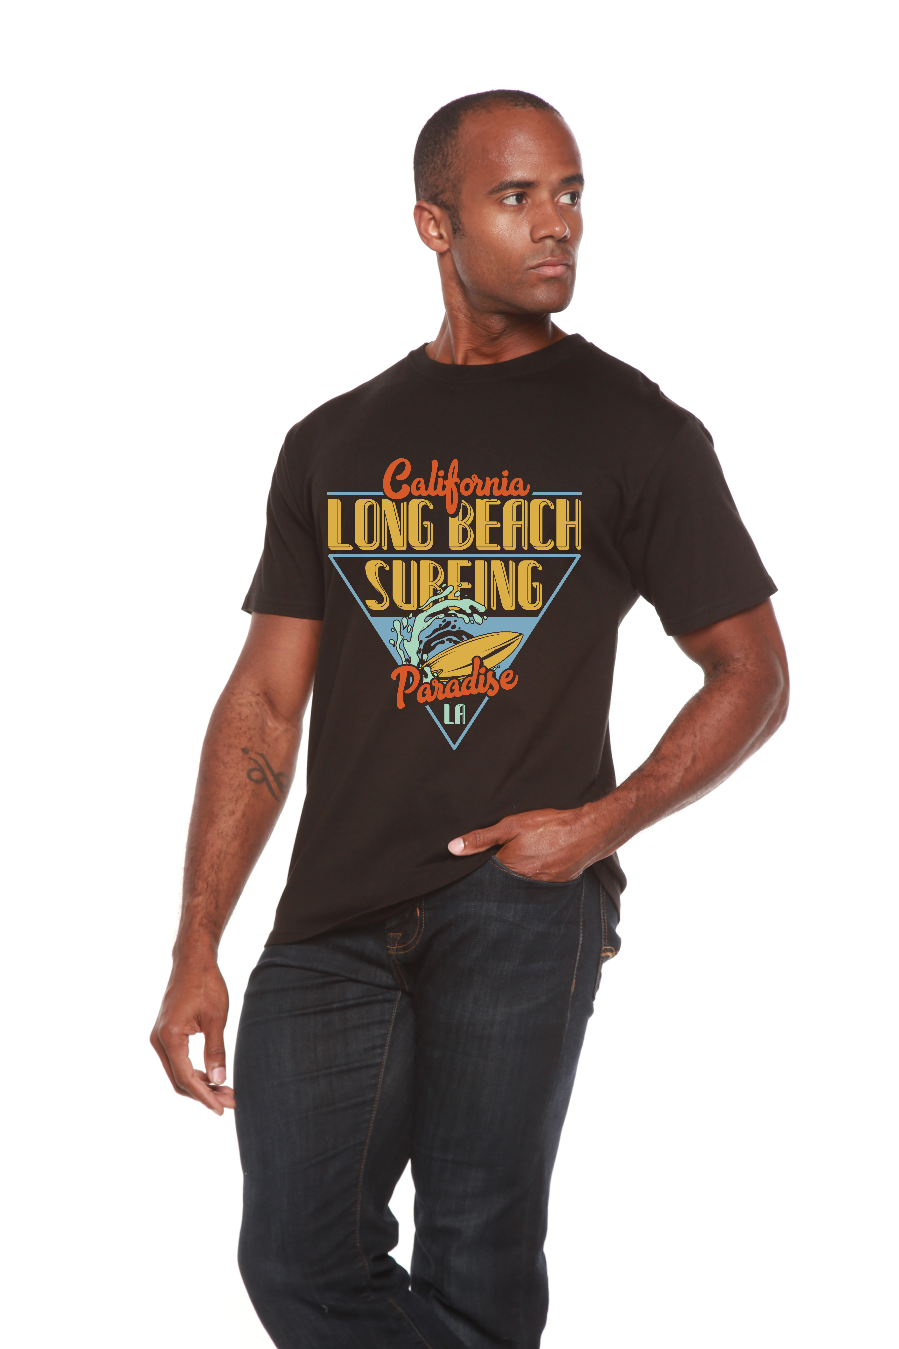 Long Beach Surfing Men's Bamboo Viscose/Organic Cotton Short Sleeve T-Shirt - Spun Bamboo